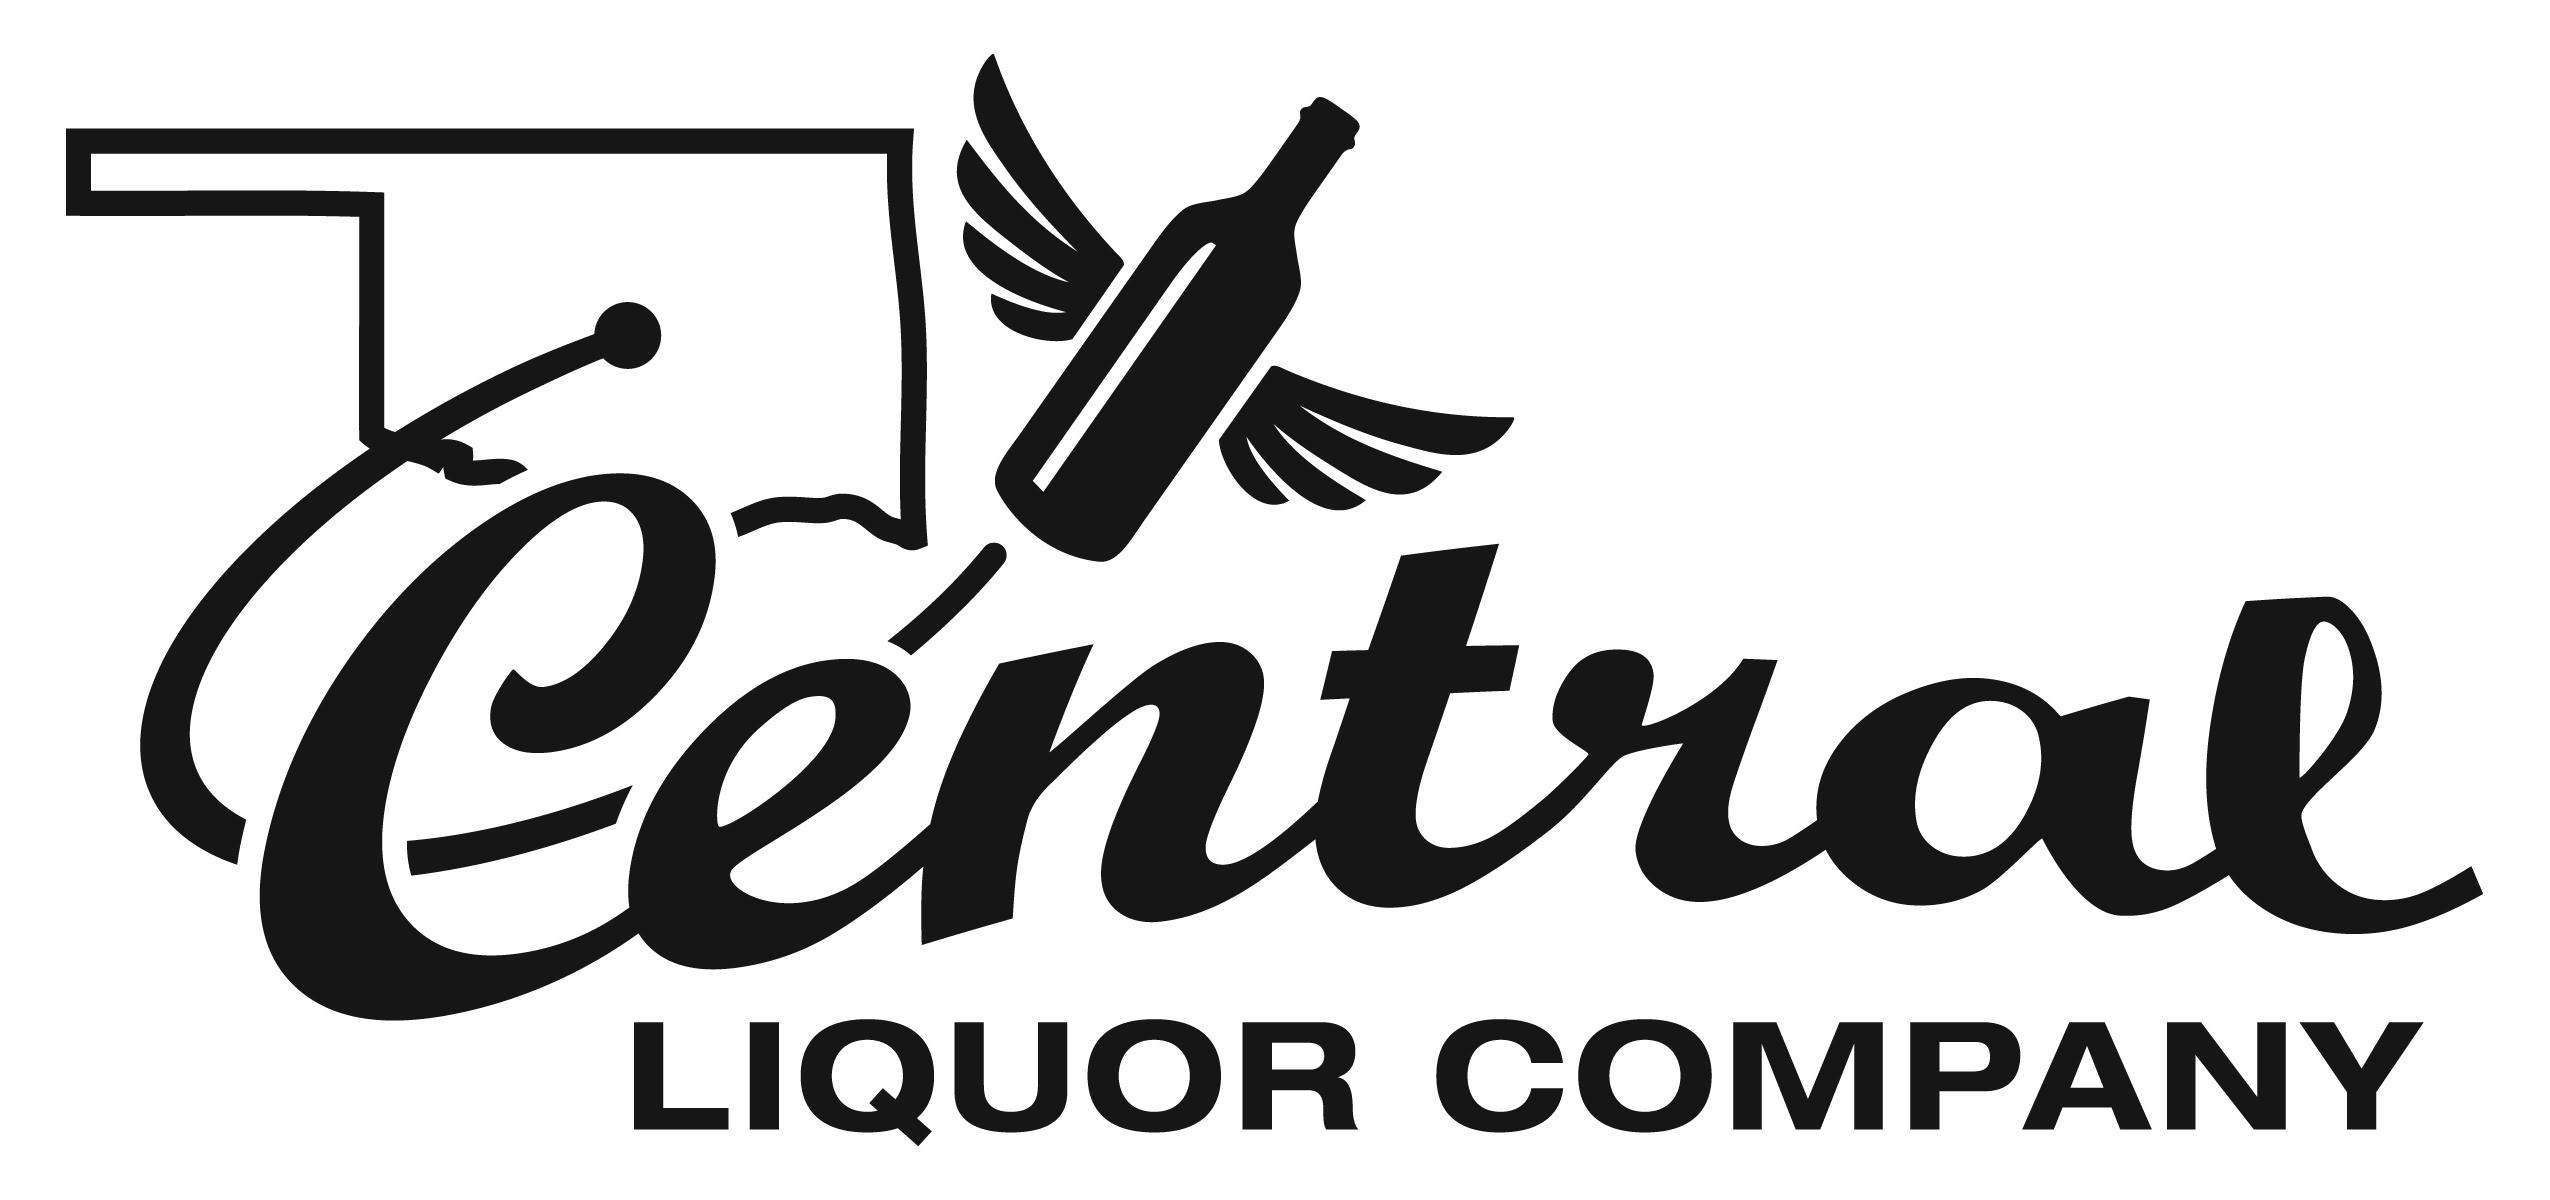 Central Liquor